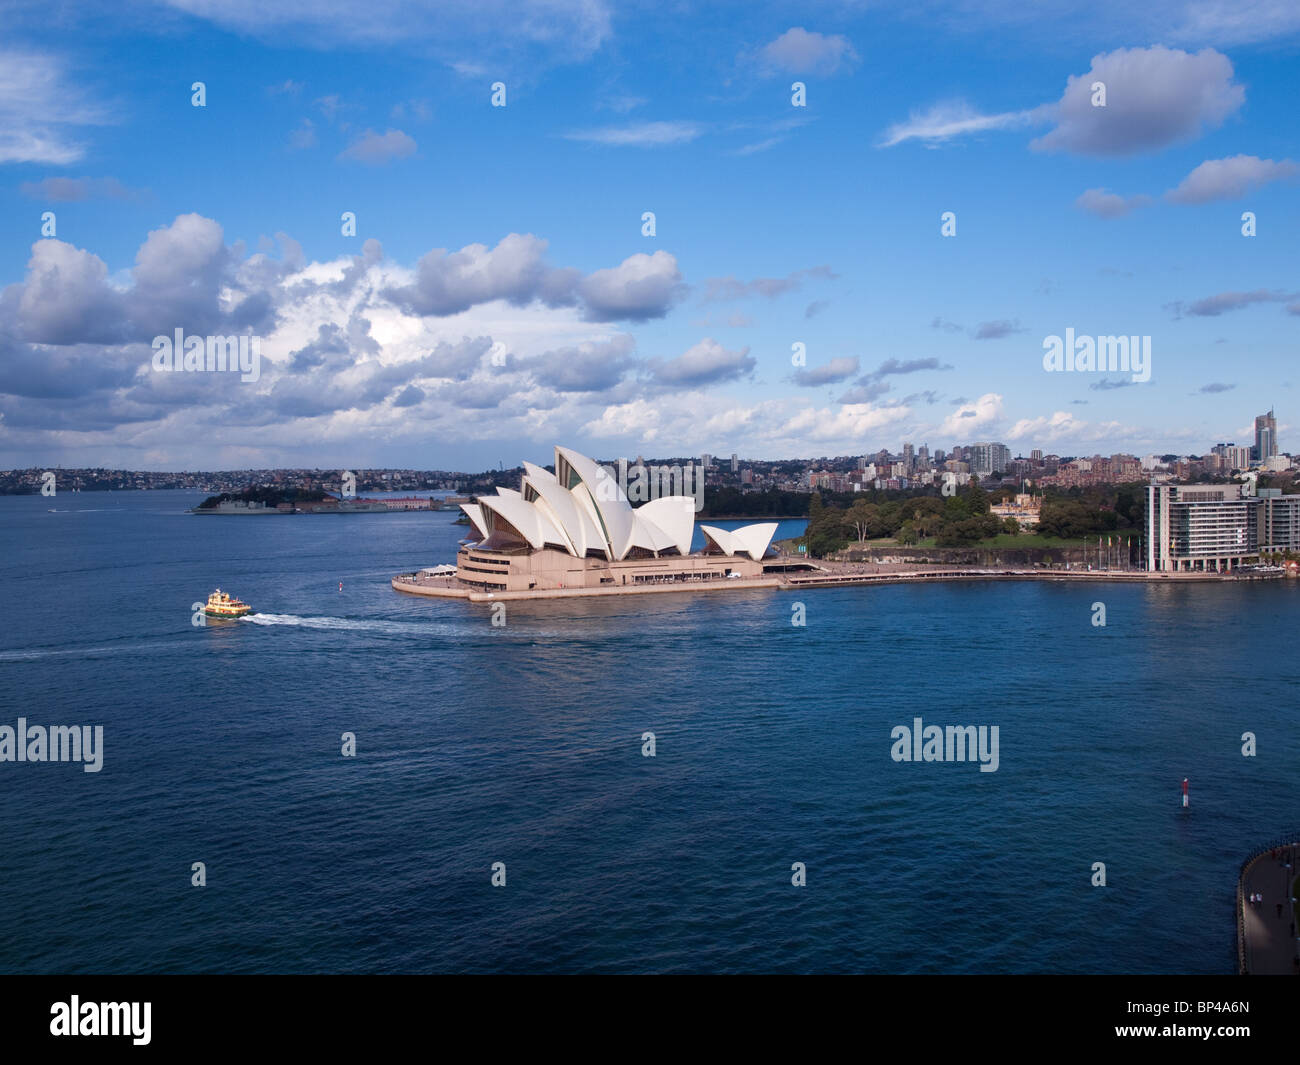 The iconic Sydney Opera House. Stock Photo